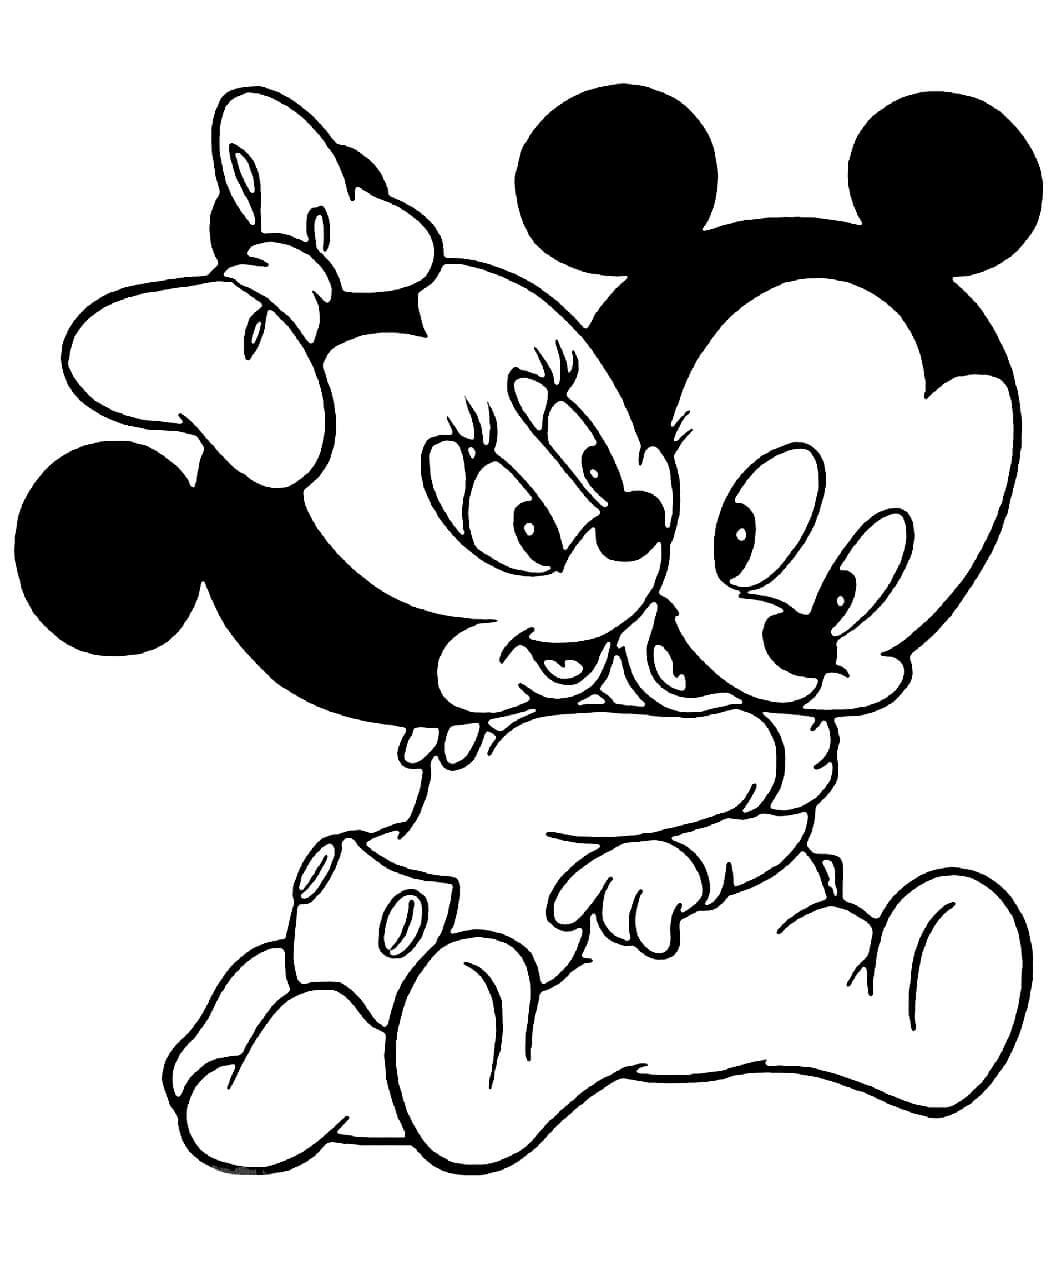 Bebé Minnie Mouse abrazando a Bebé Mickey Mouse